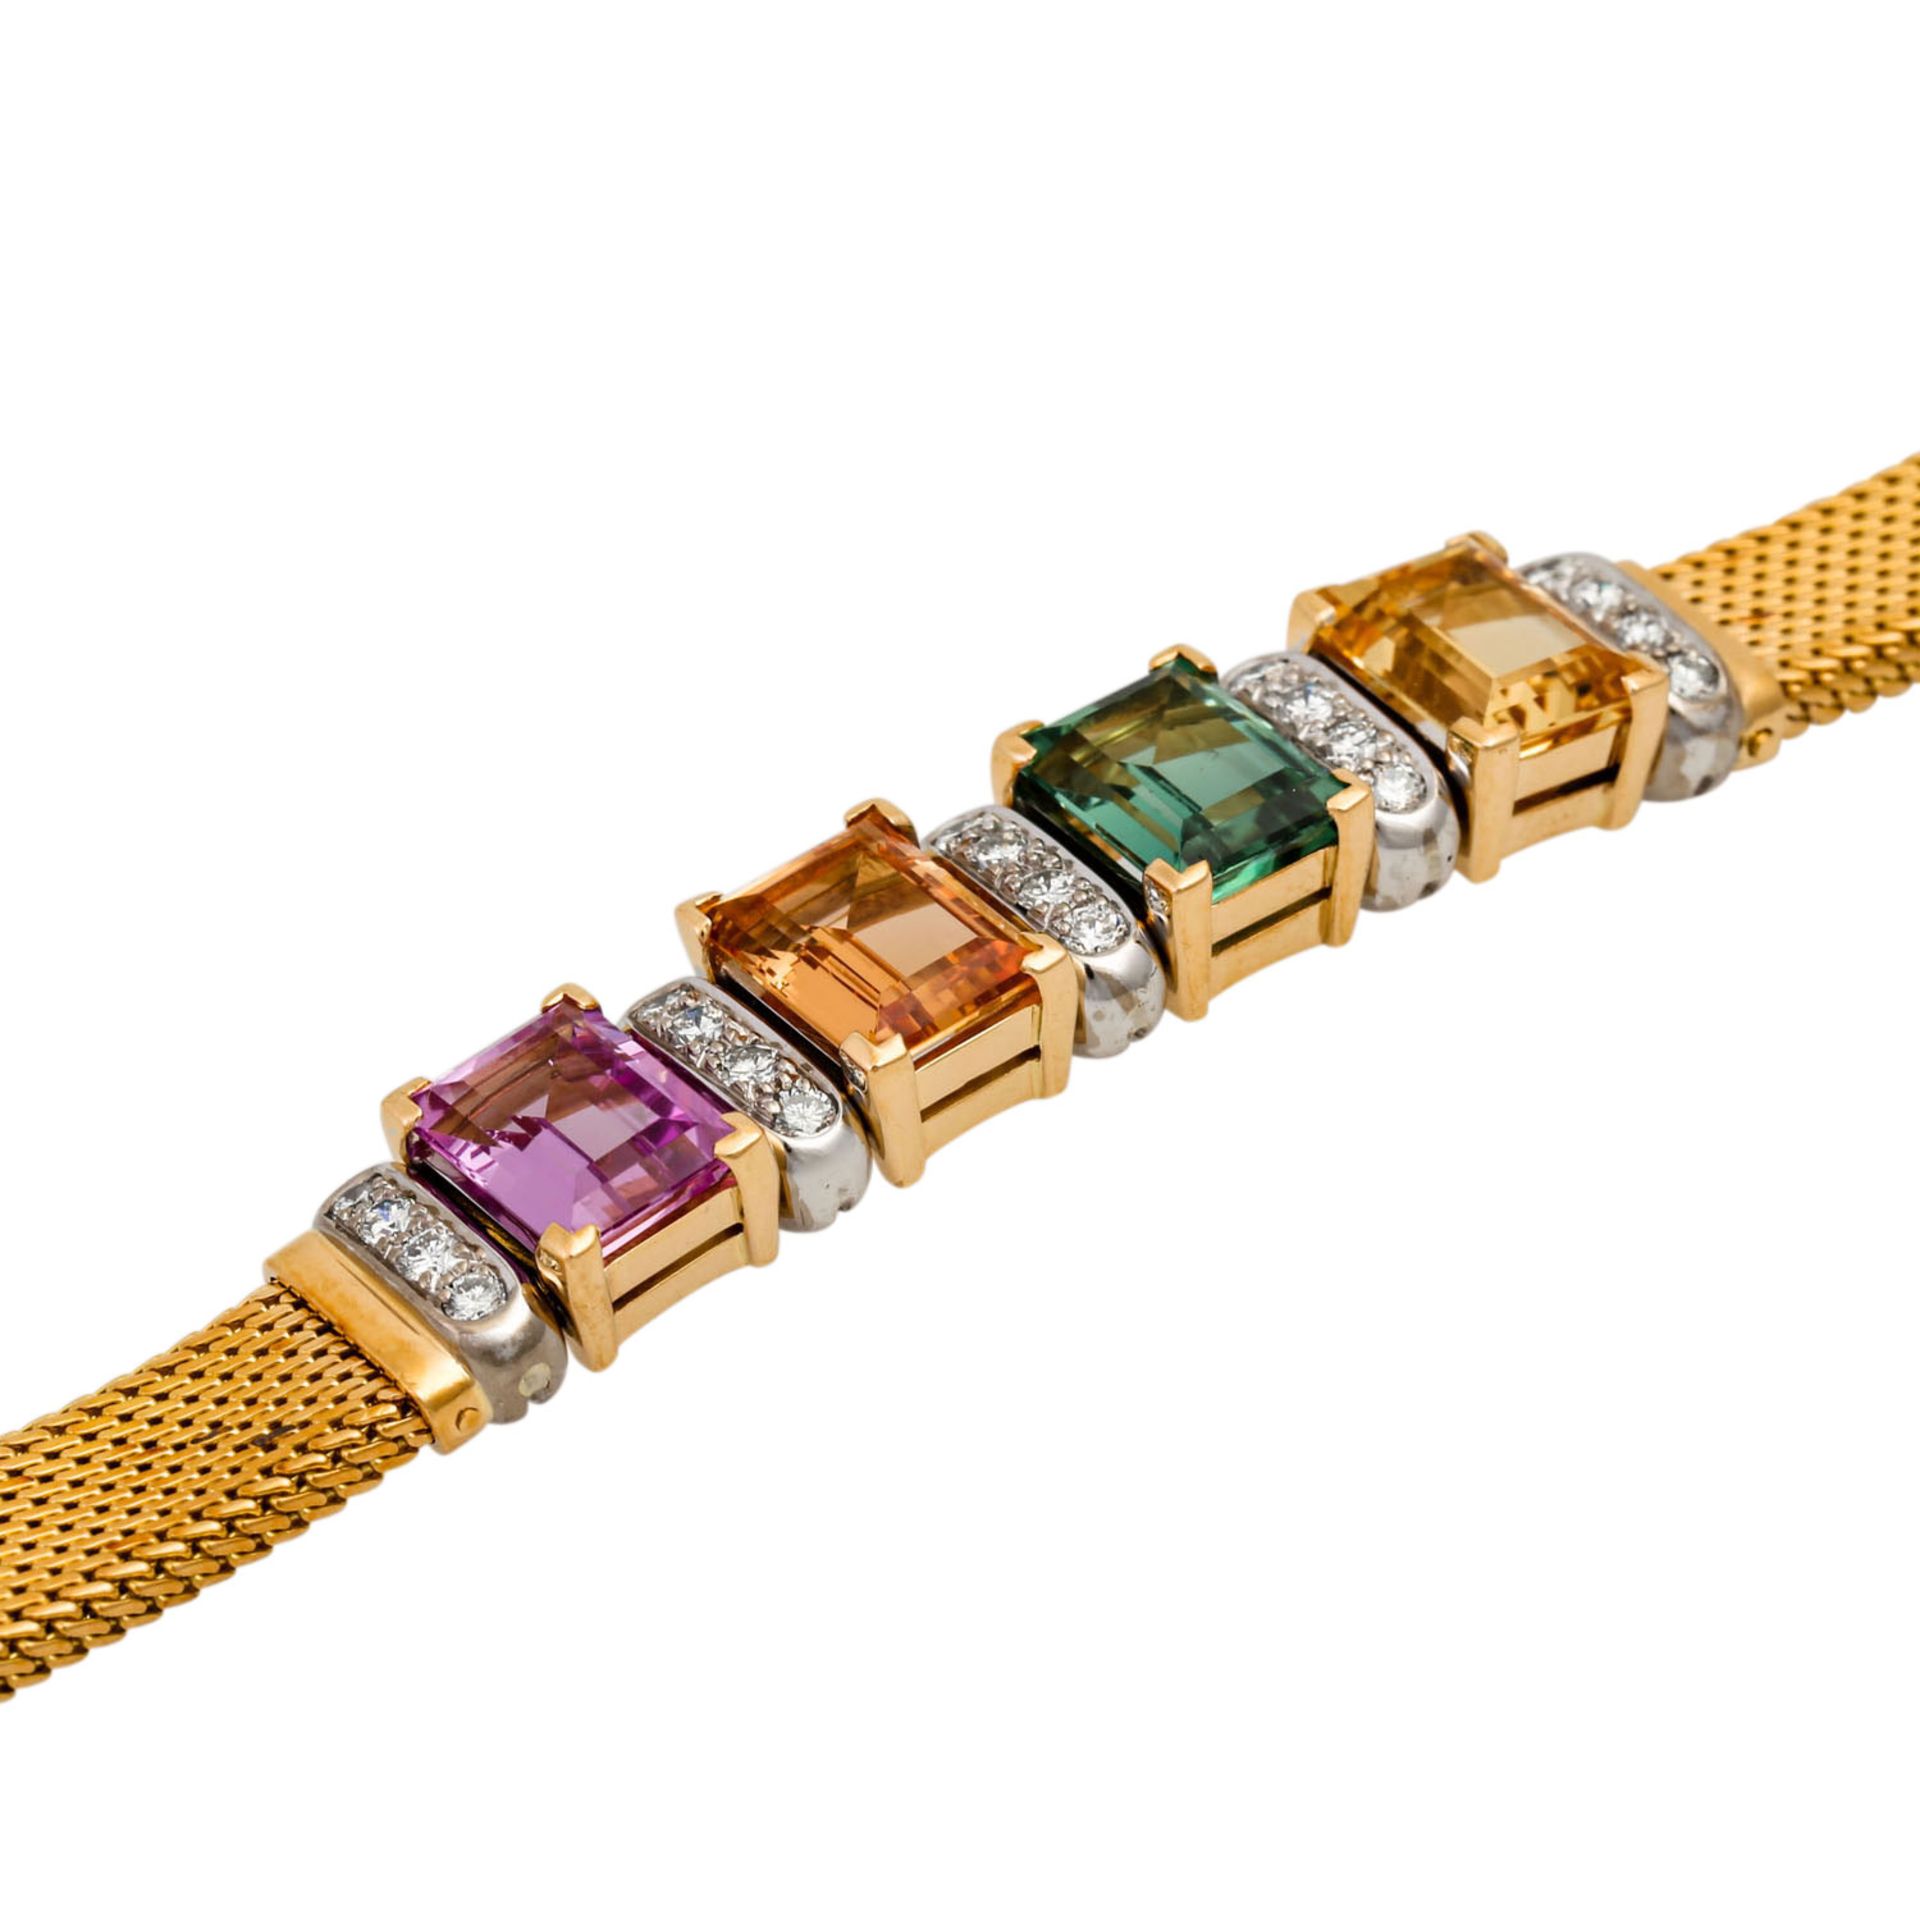 Armband mit Farbedelsteinen,1 Turmalin sowie 3 Edeltopase, kleine Brillanten zus. ca. - Bild 4 aus 6